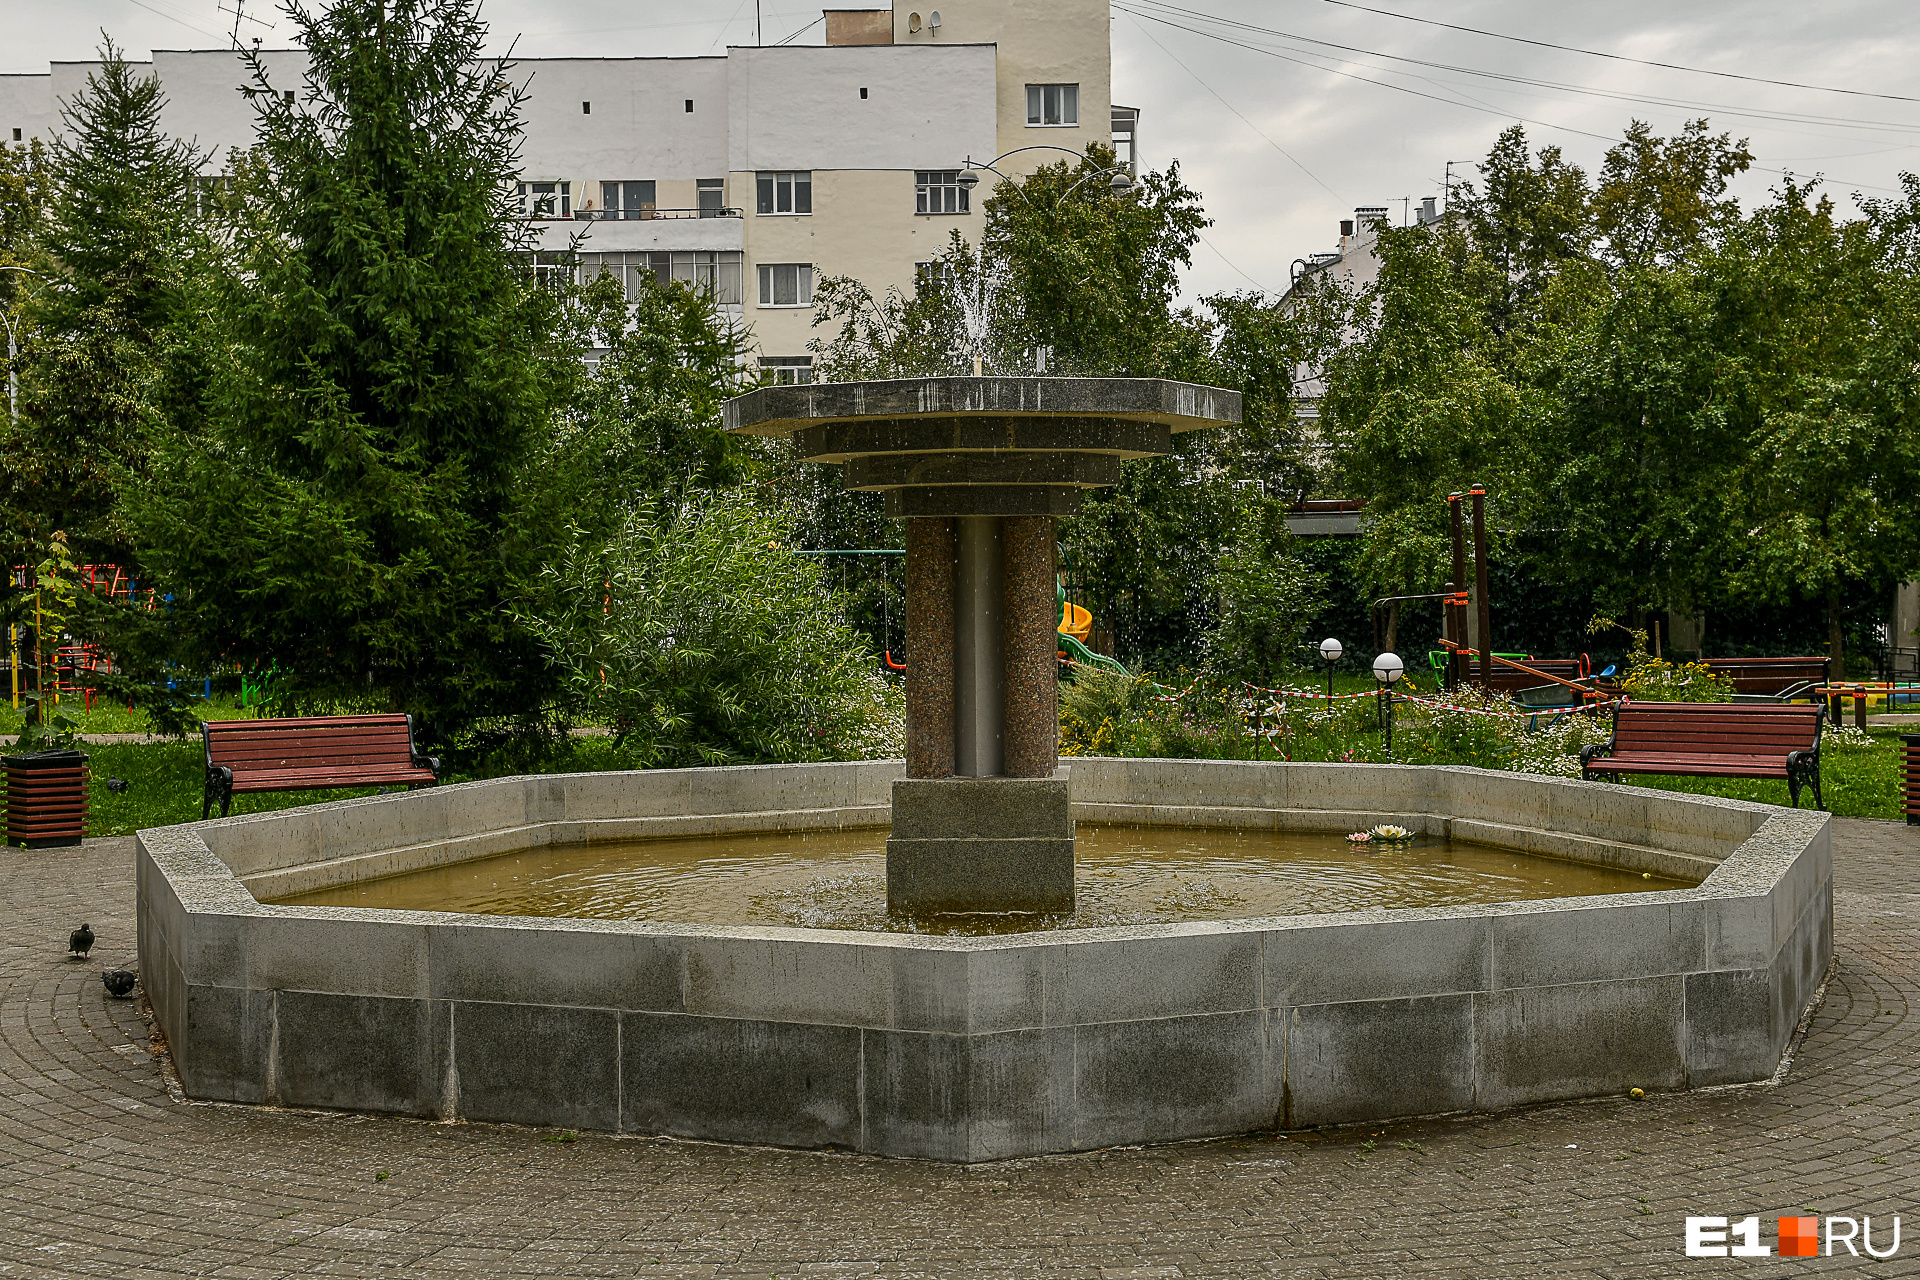 Двор дома <nobr>№ 2</nobr> на 8 Марта — один из немногих в Екатеринбурге, где есть фонтан, и, наверное, единственный, где этот фонтан работает